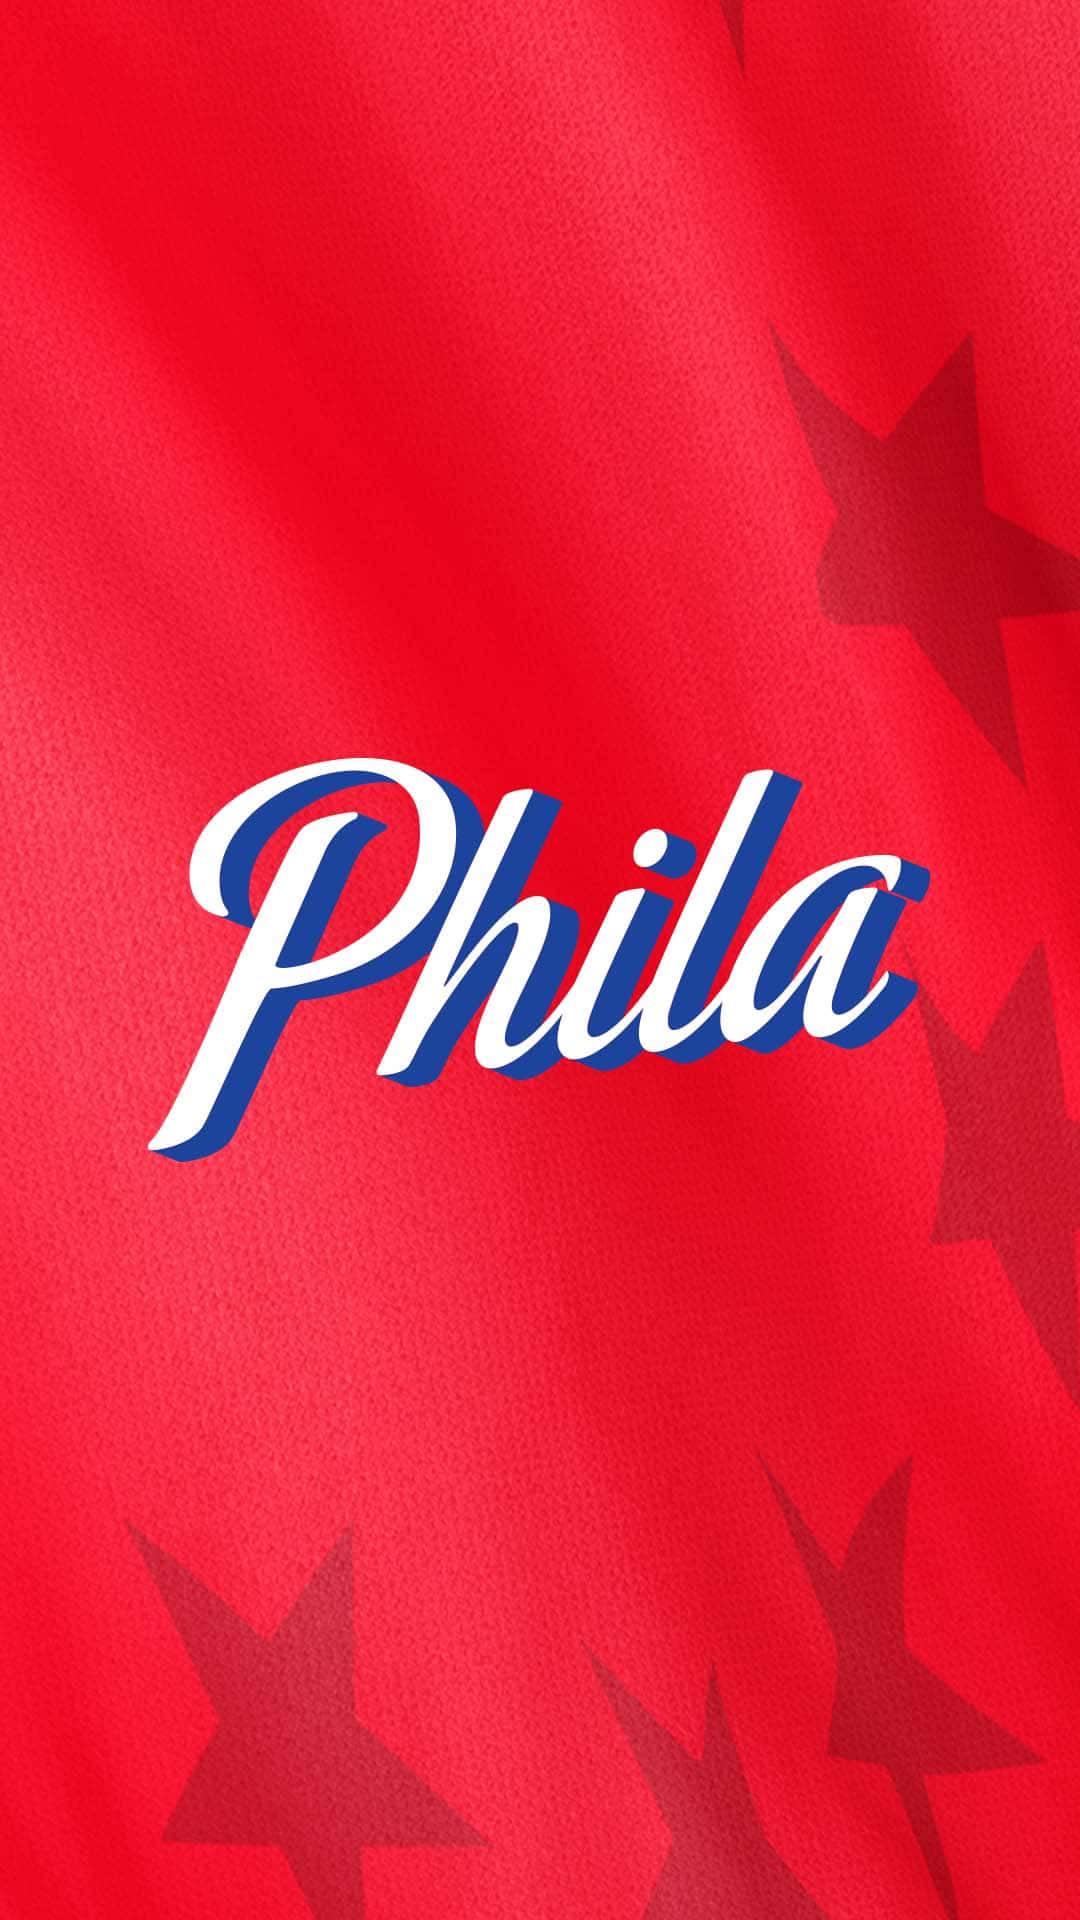 Consigueel Exclusivo Iphone De Edición Especial De Los Philadelphia 76ers. Fondo de pantalla